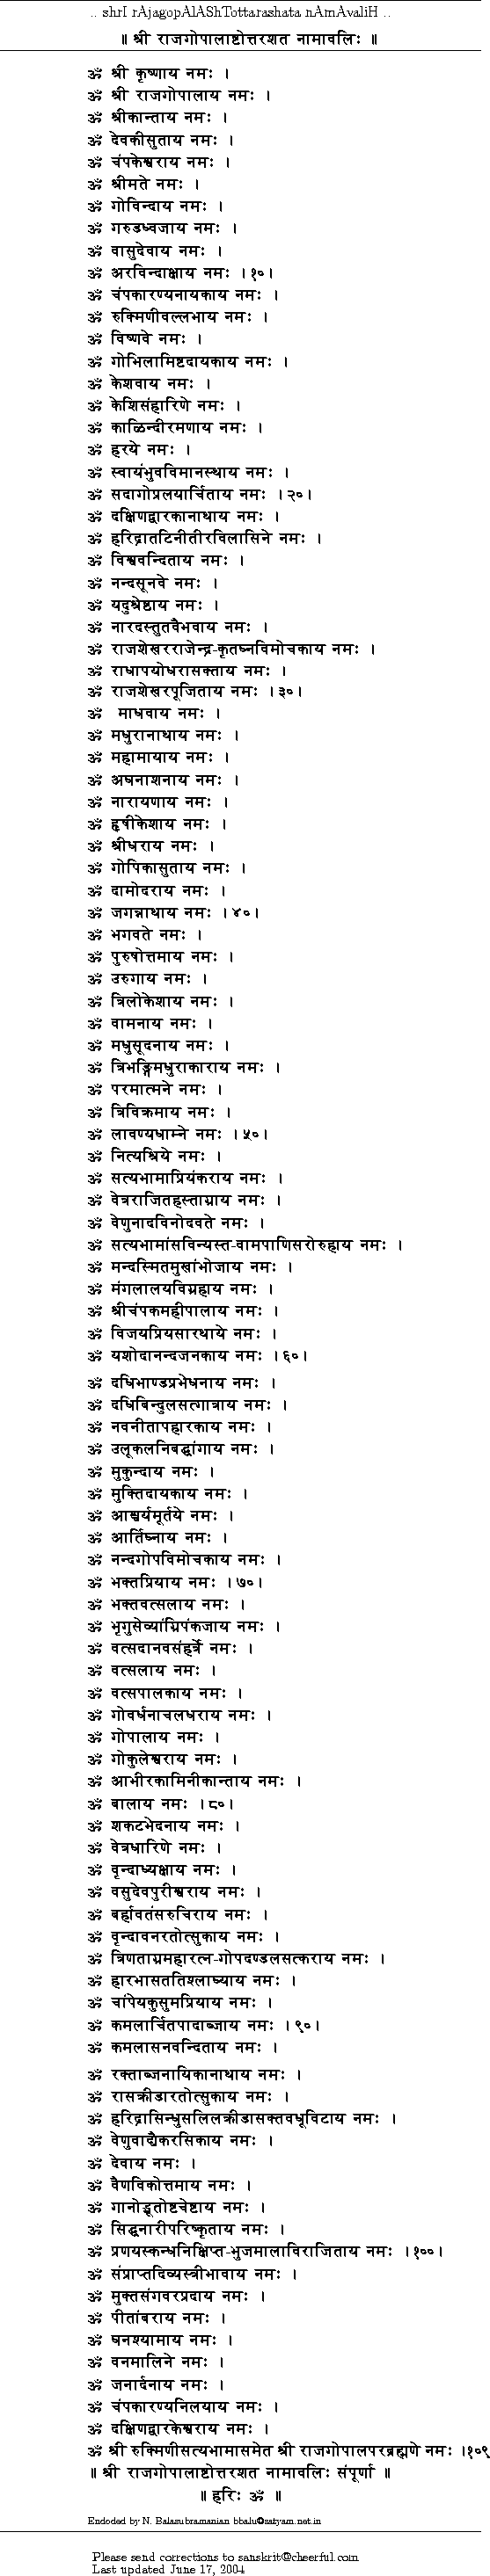 108 names of Raja Gopala